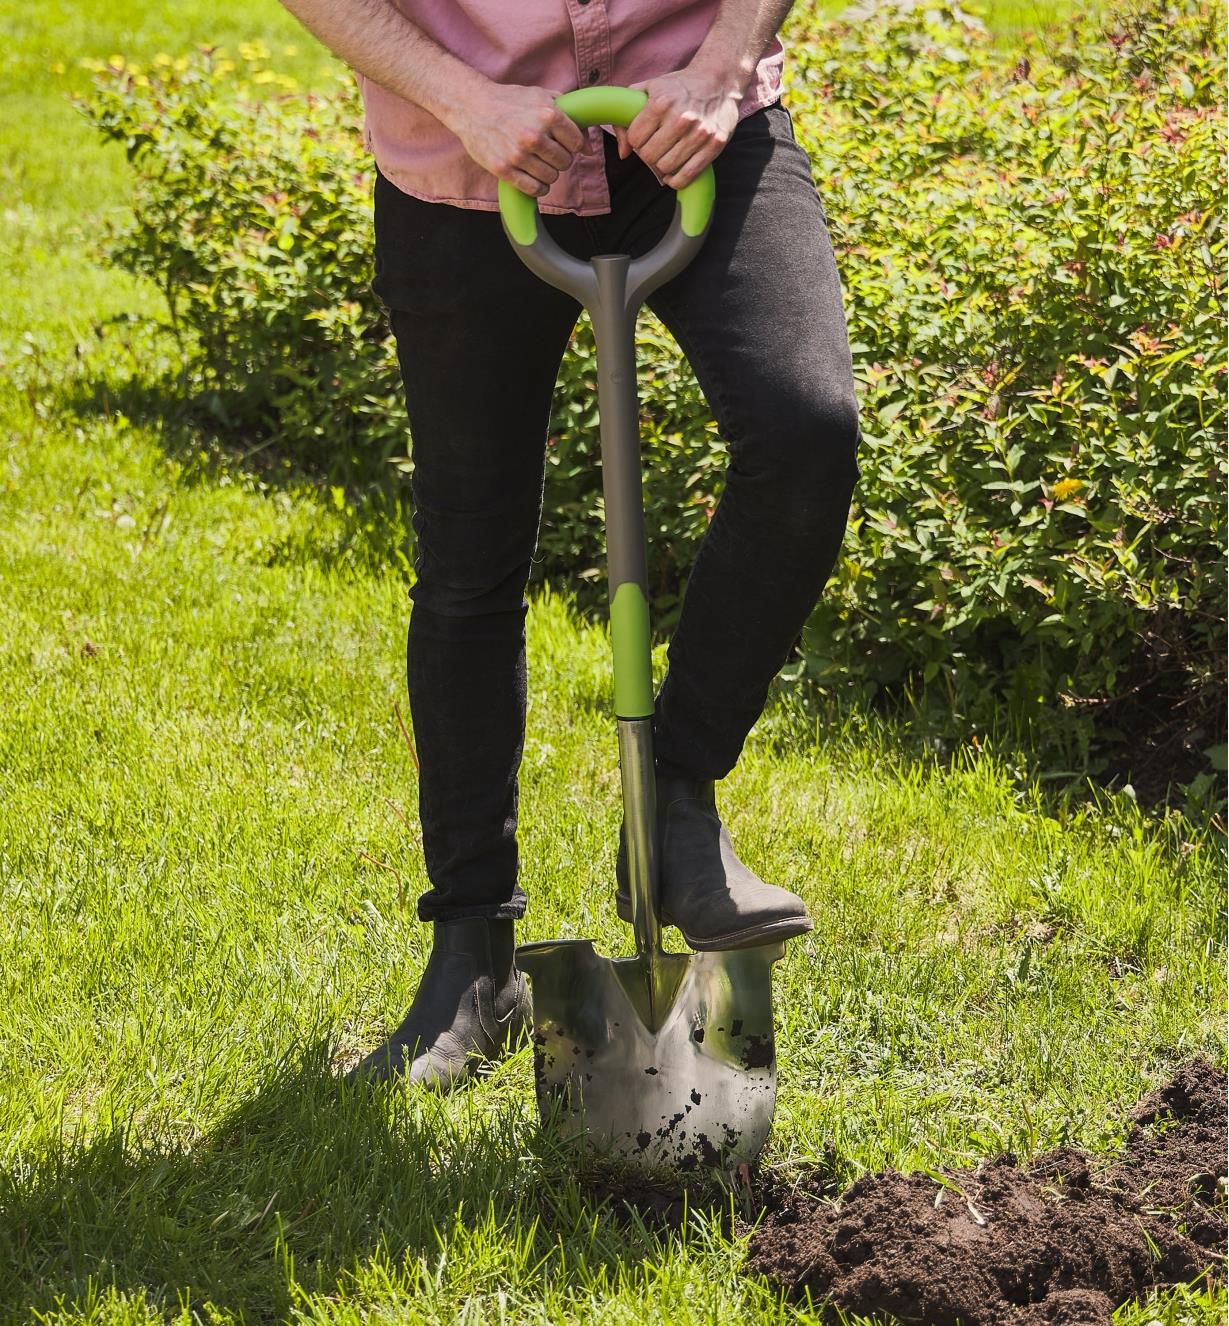 Personne creusant un trou dans une pelouse avec une pelle ergonomique